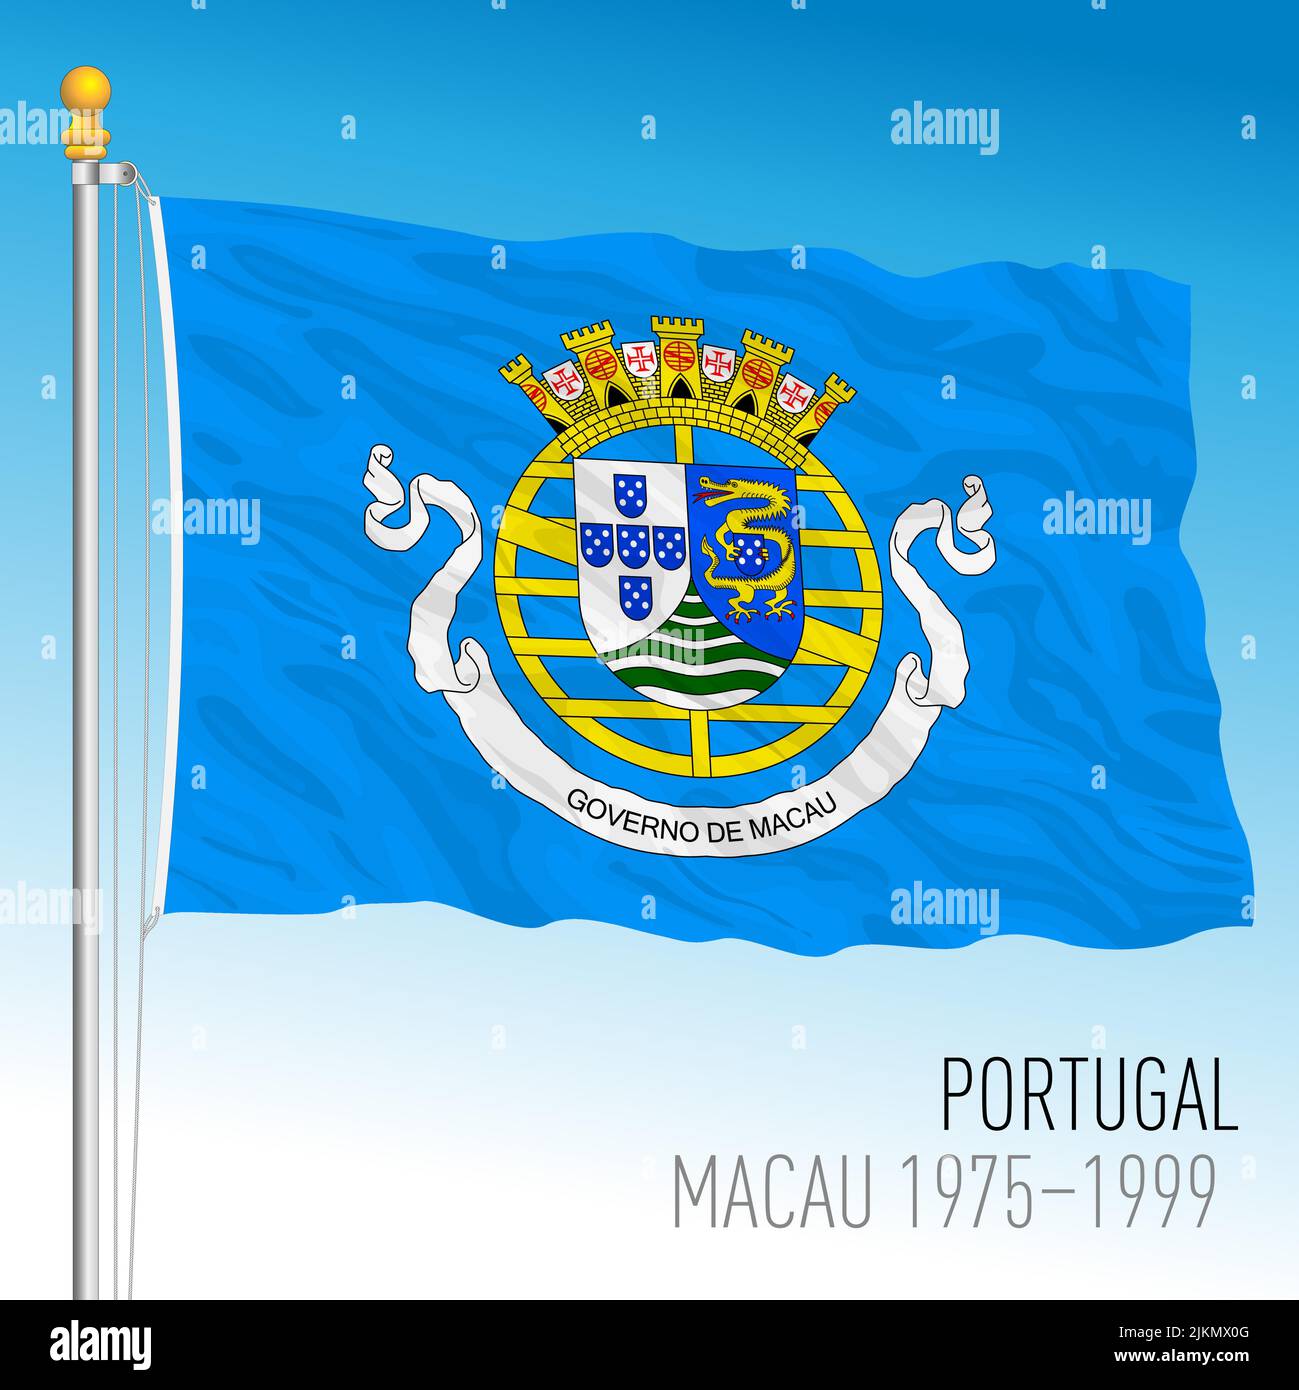 Portugal, bandera histórica de Macao, 1975 - 1999, país asiático, ilustración vectorial Ilustración del Vector